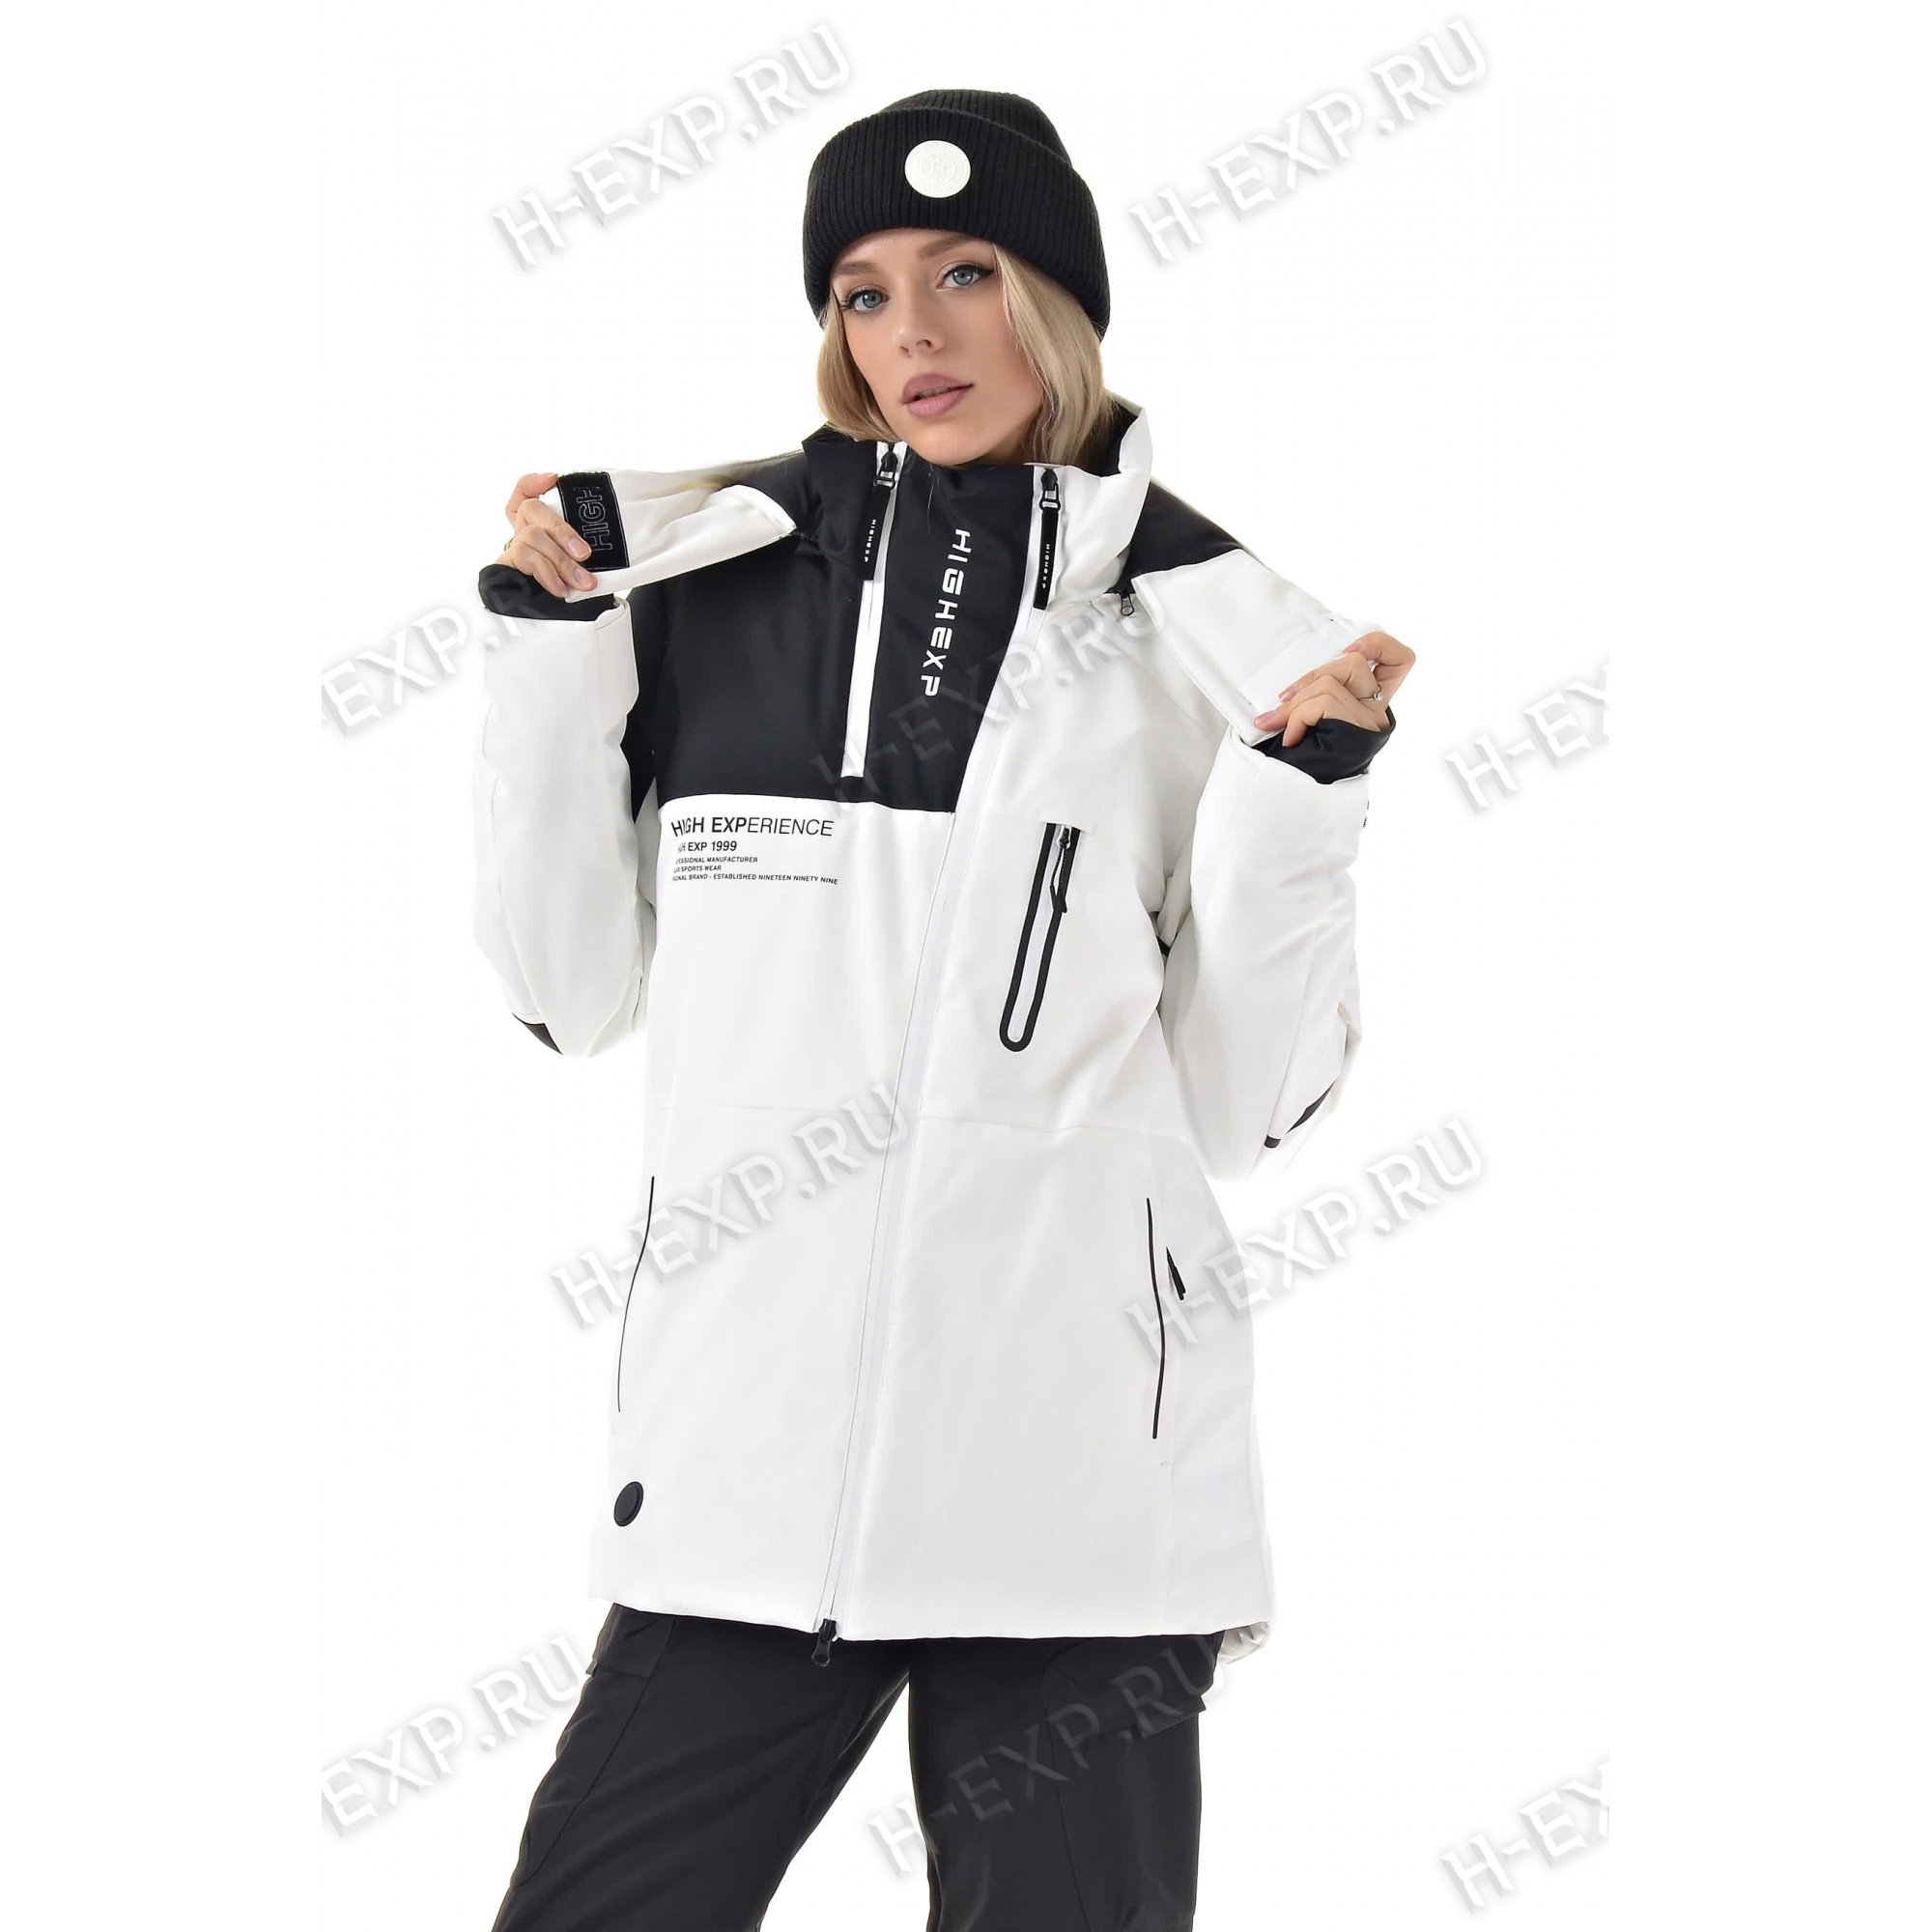 Жeнcкая сноубордическая куртка с подогревом High Experience 